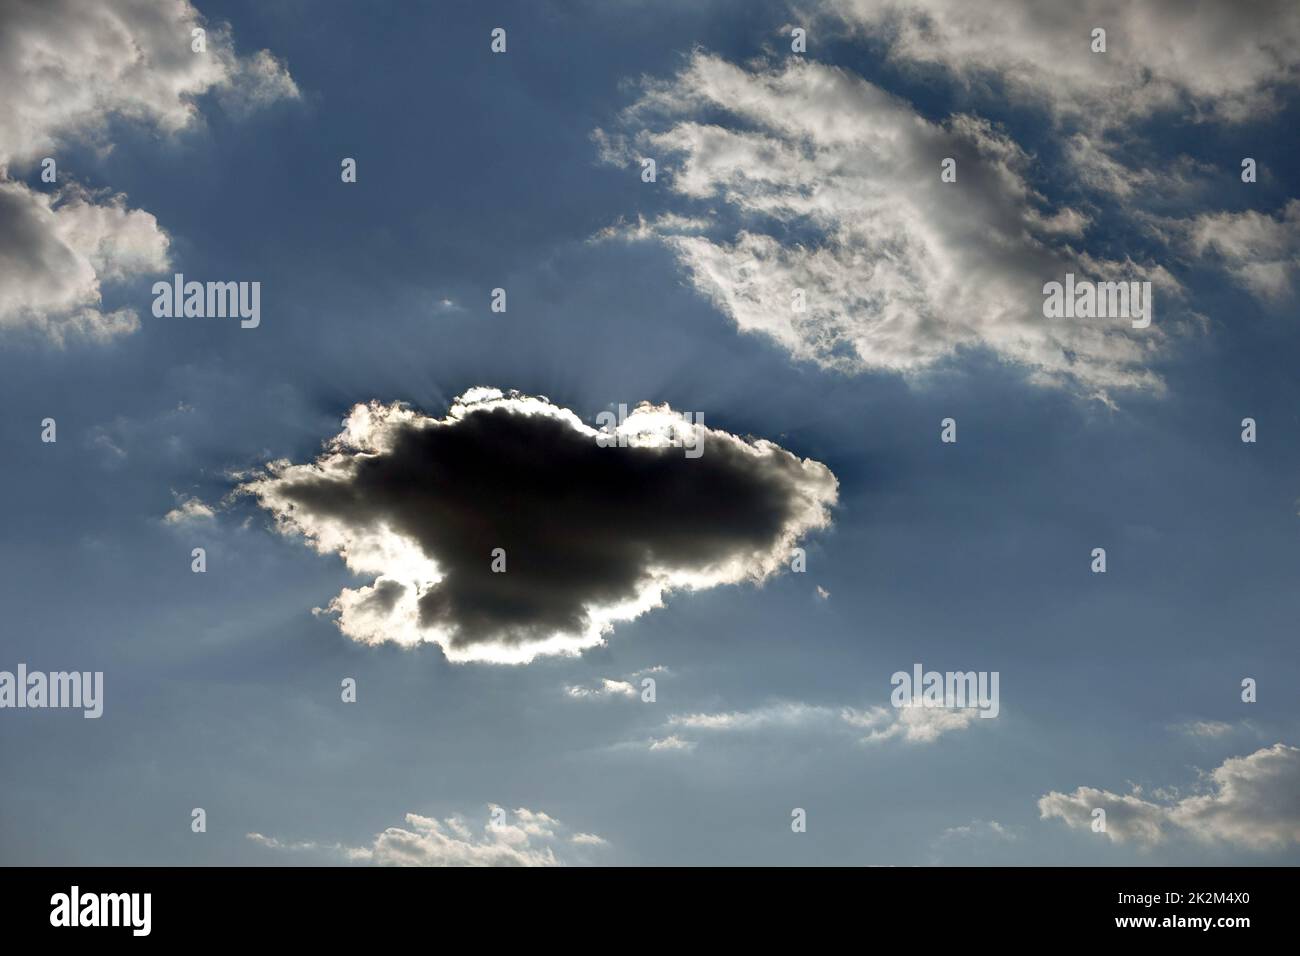 Schwarze Wolke bildet sich am blauen Himmel, dunkle Wolke bildet sich in verschiedenen und interessanten Formen Stockfoto